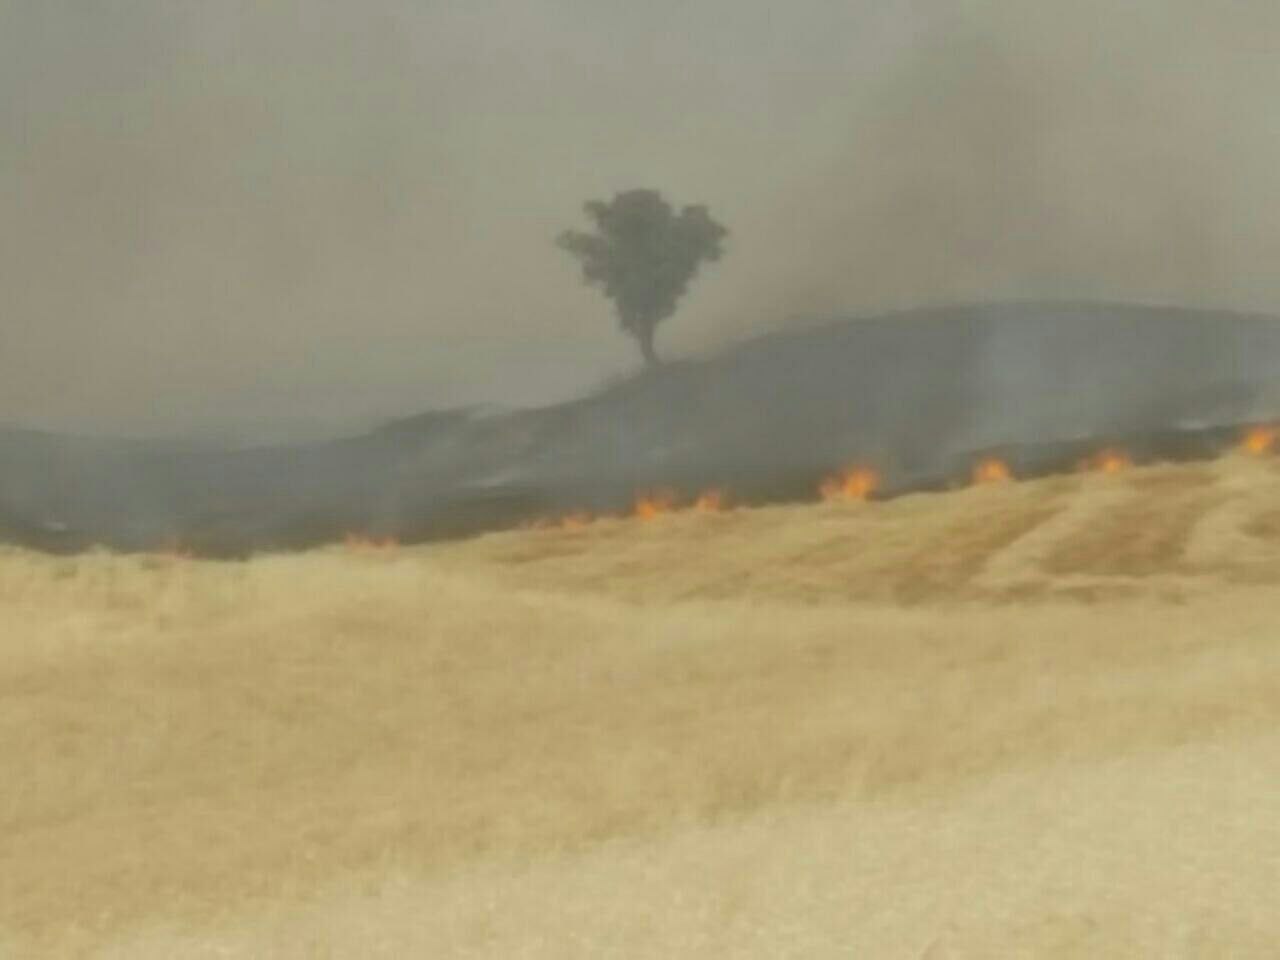 وقوع آتش سوزي در مزارع شهرستان كوهدشت